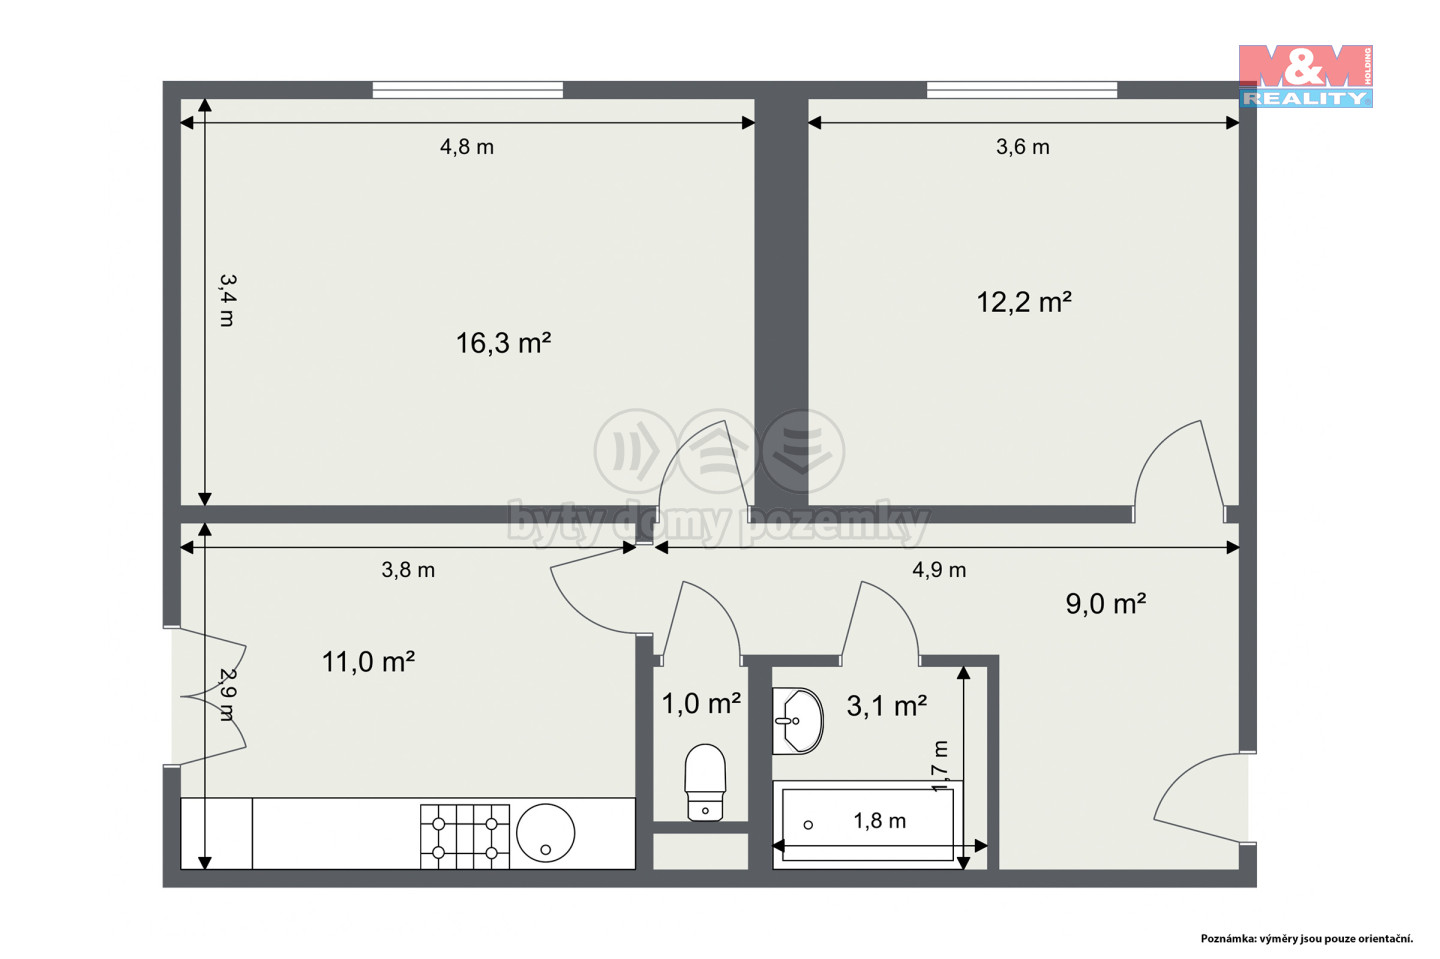 2D Floor Plan.jpg